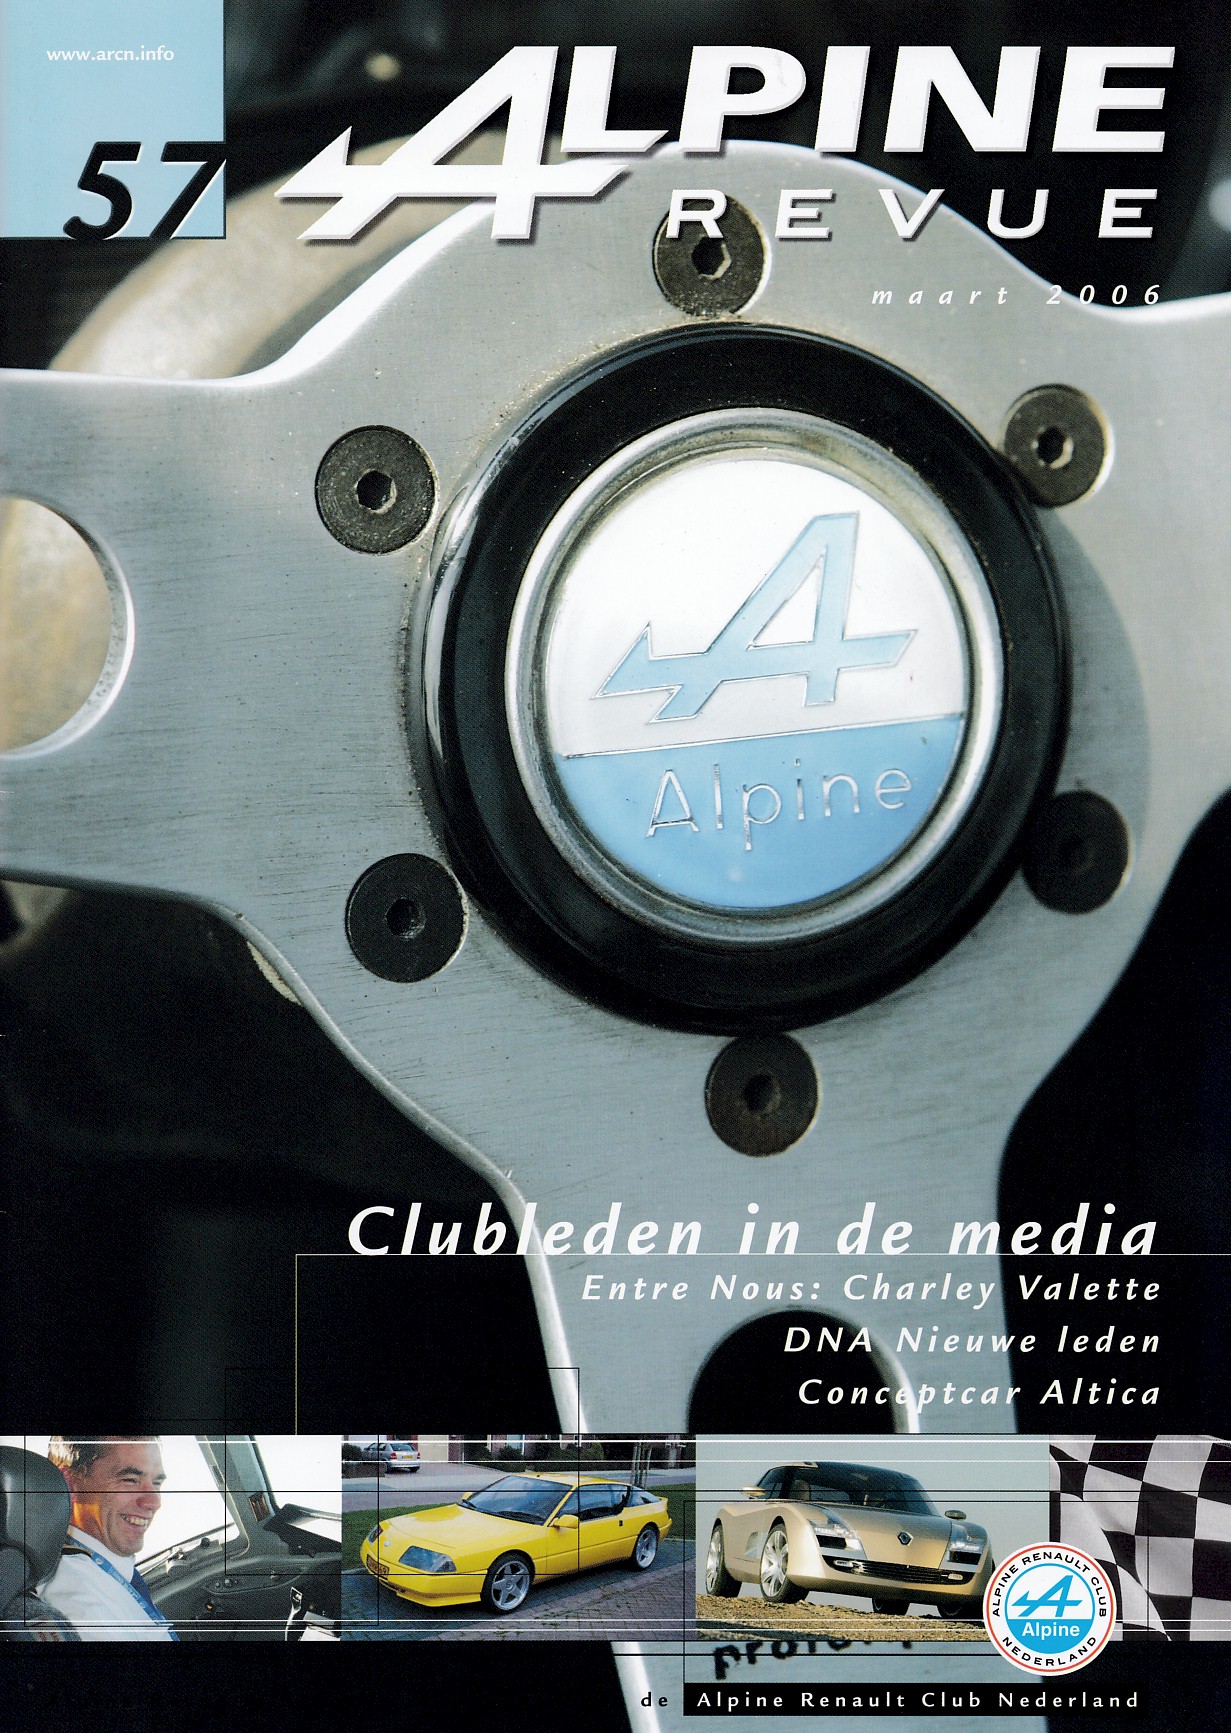 Revue, Alpine - Clubblad van de ARCN (Alpine Renault Club Nederland), nummer-57, maart 2006